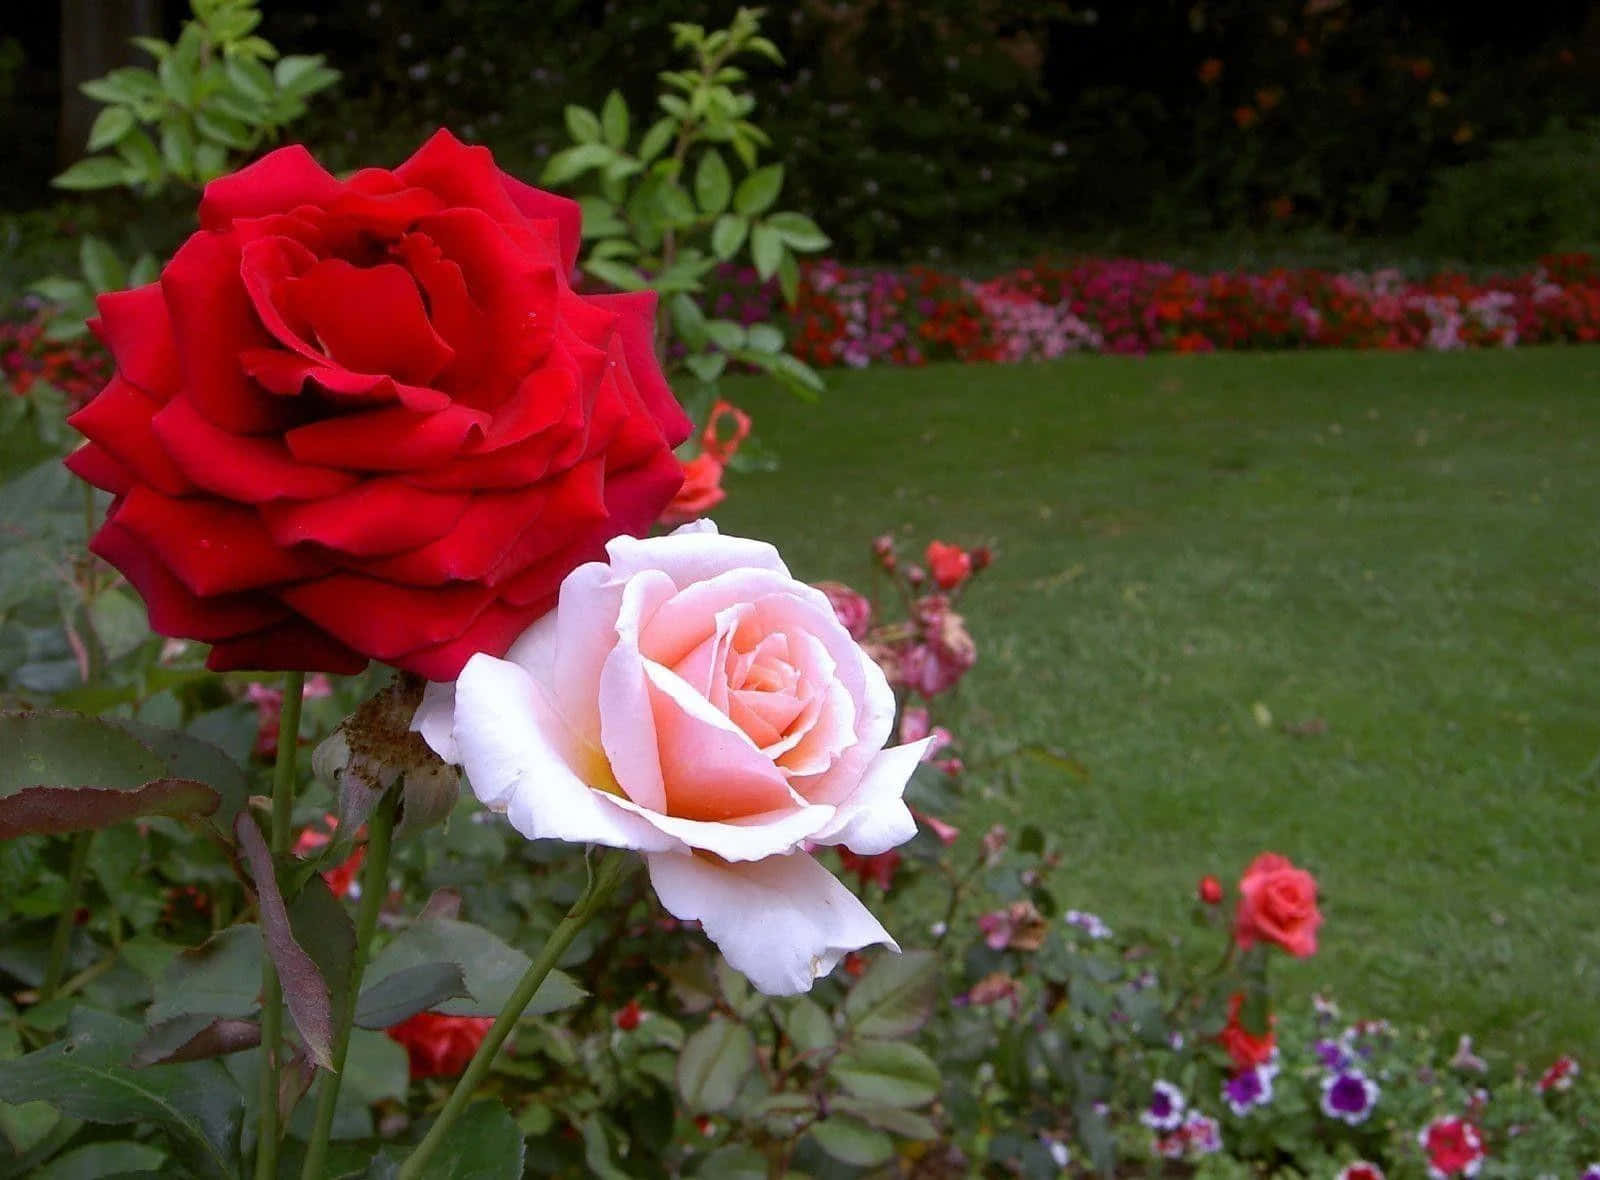 Rosade Jardín Roja Y Blanca Cerca De Una Imagen De Césped.